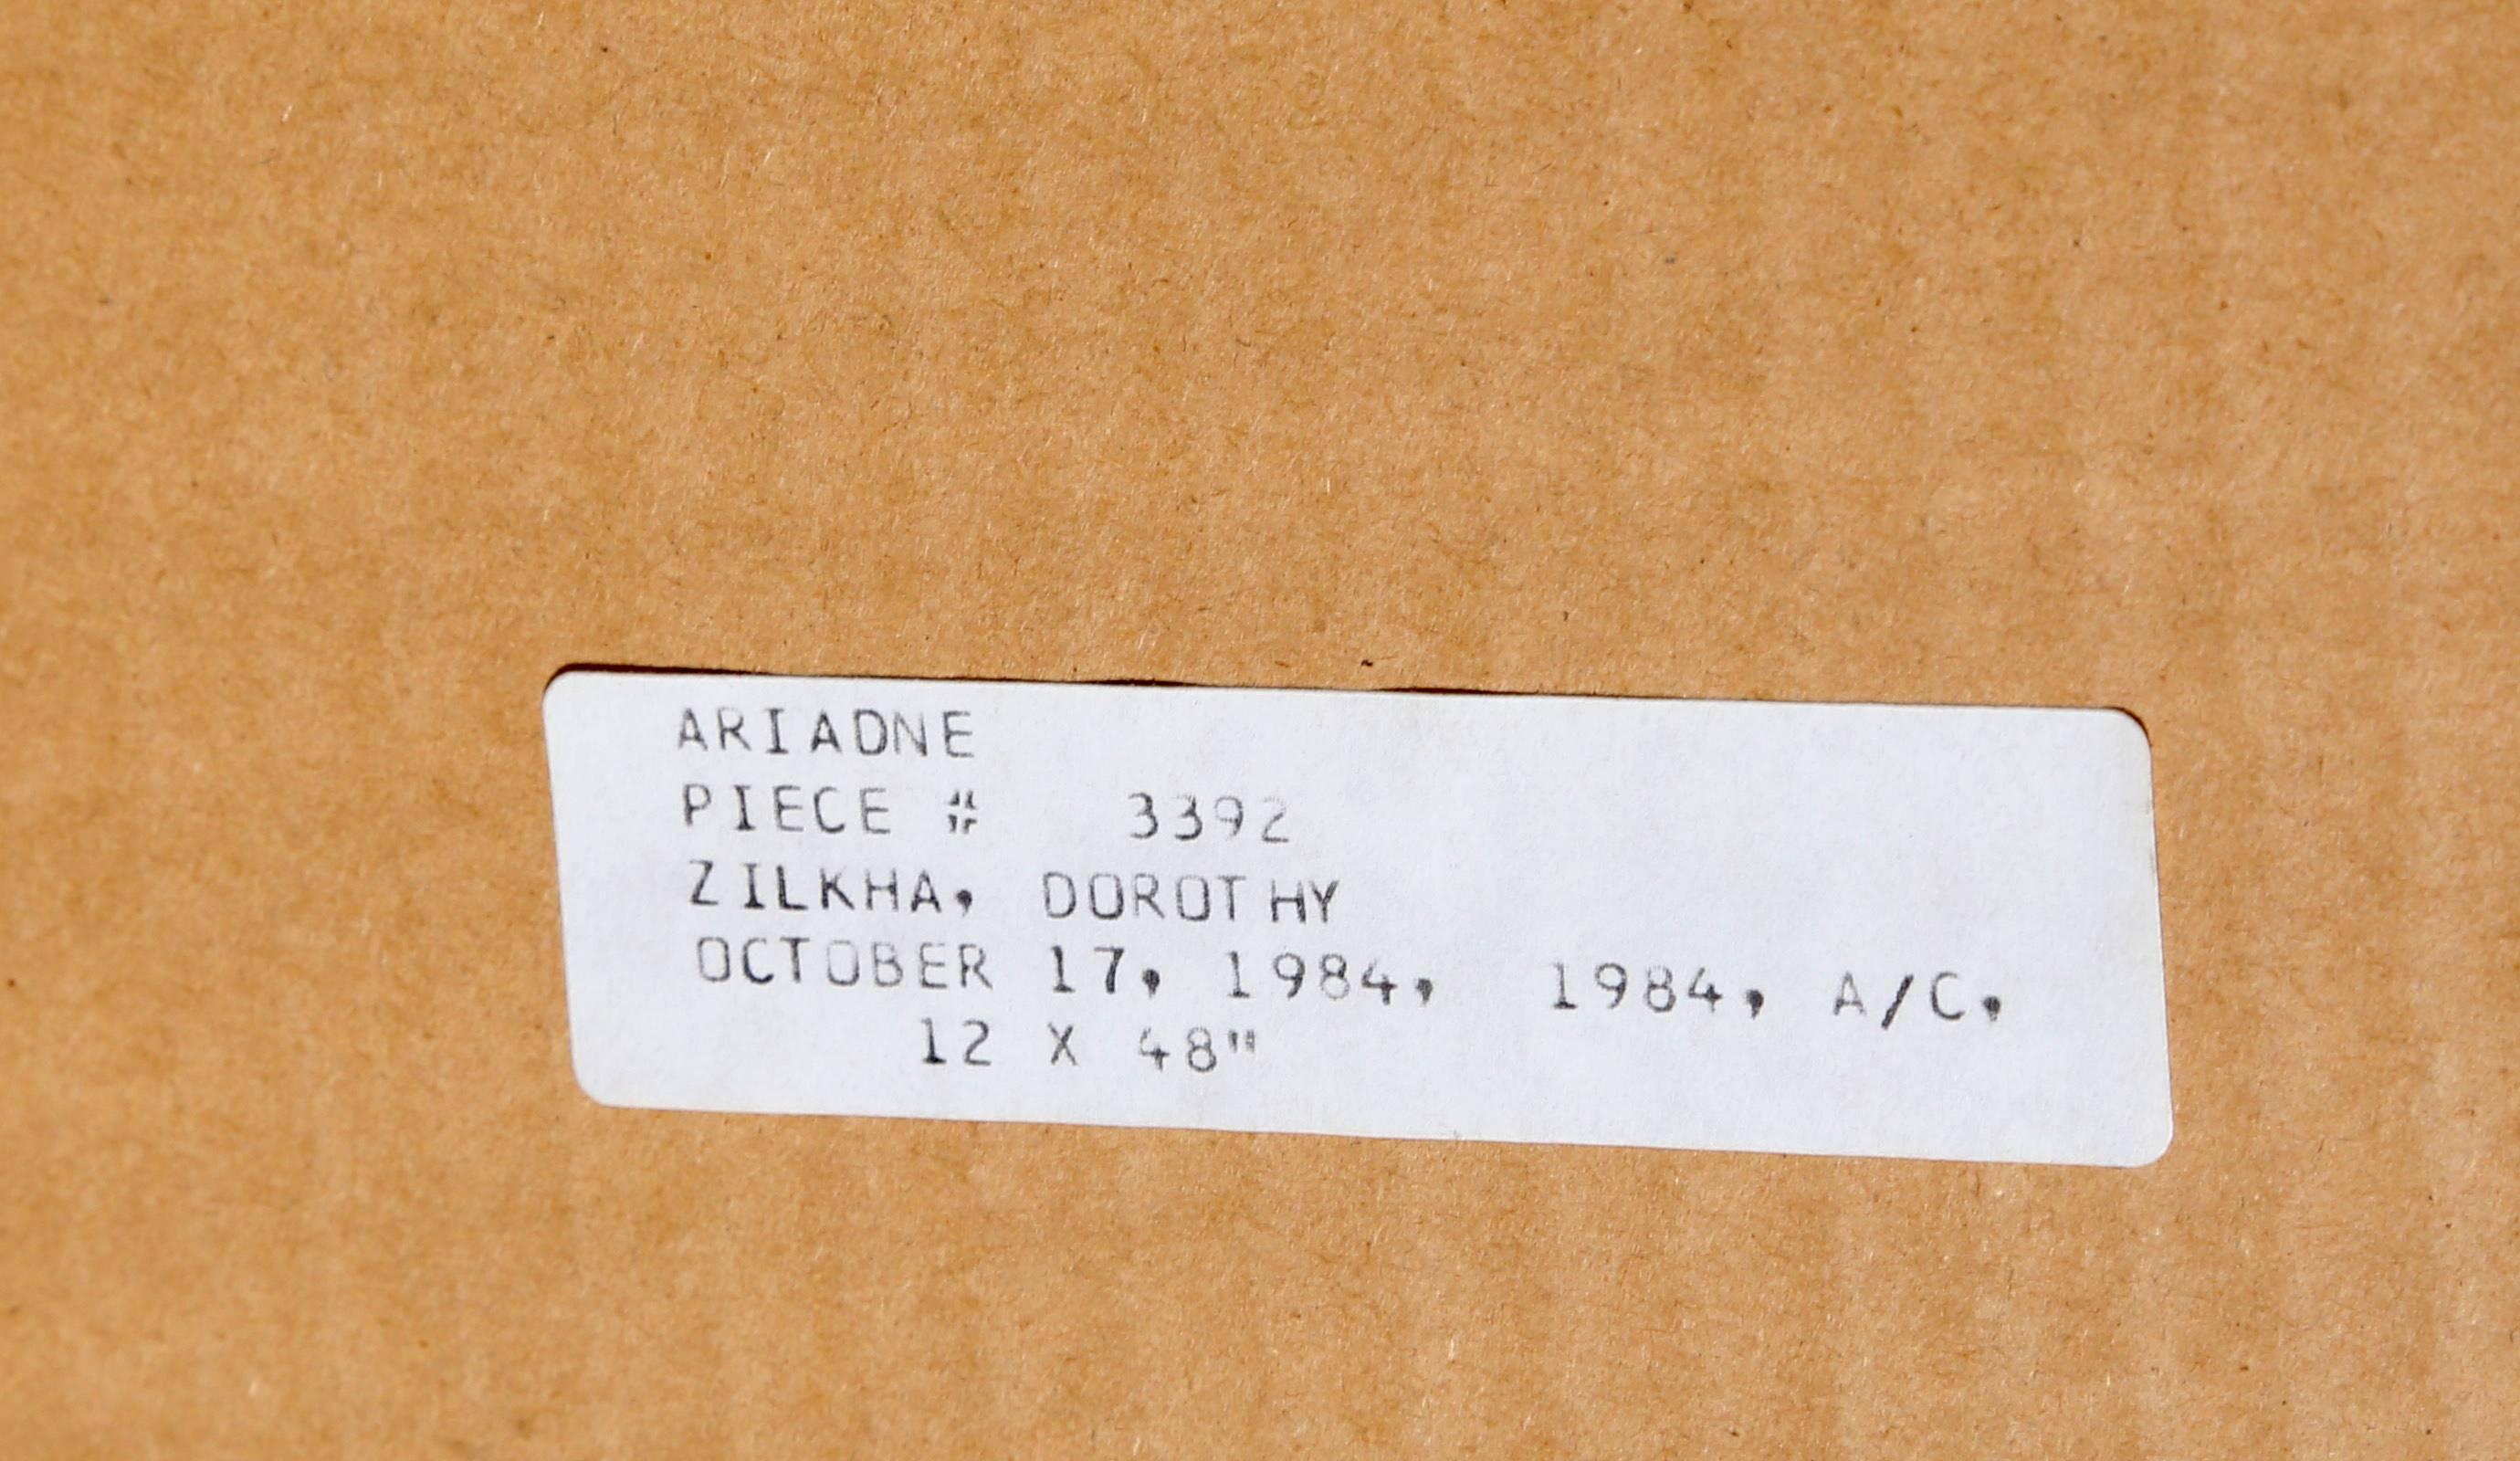 Abstraktes Acrylgemälde auf Karton von Dorothy Zilka, Ariadne im Angebot 2